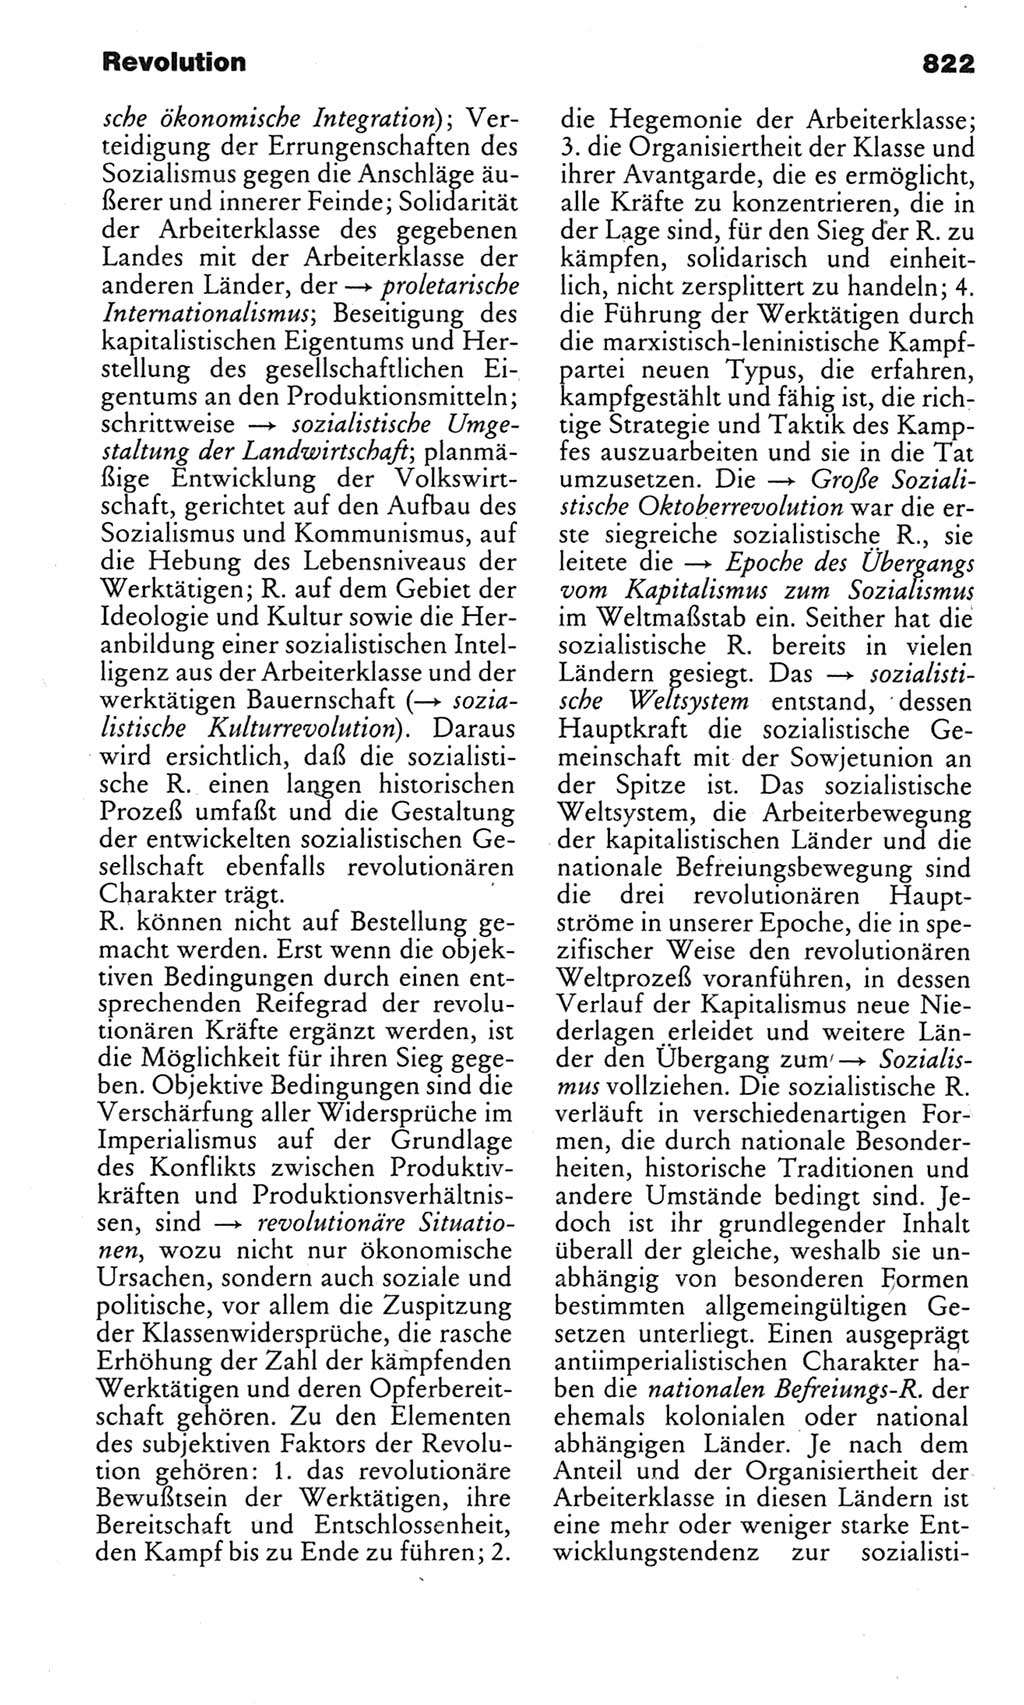 Kleines politisches Wörterbuch [Deutsche Demokratische Republik (DDR)] 1983, Seite 822 (Kl. pol. Wb. DDR 1983, S. 822)